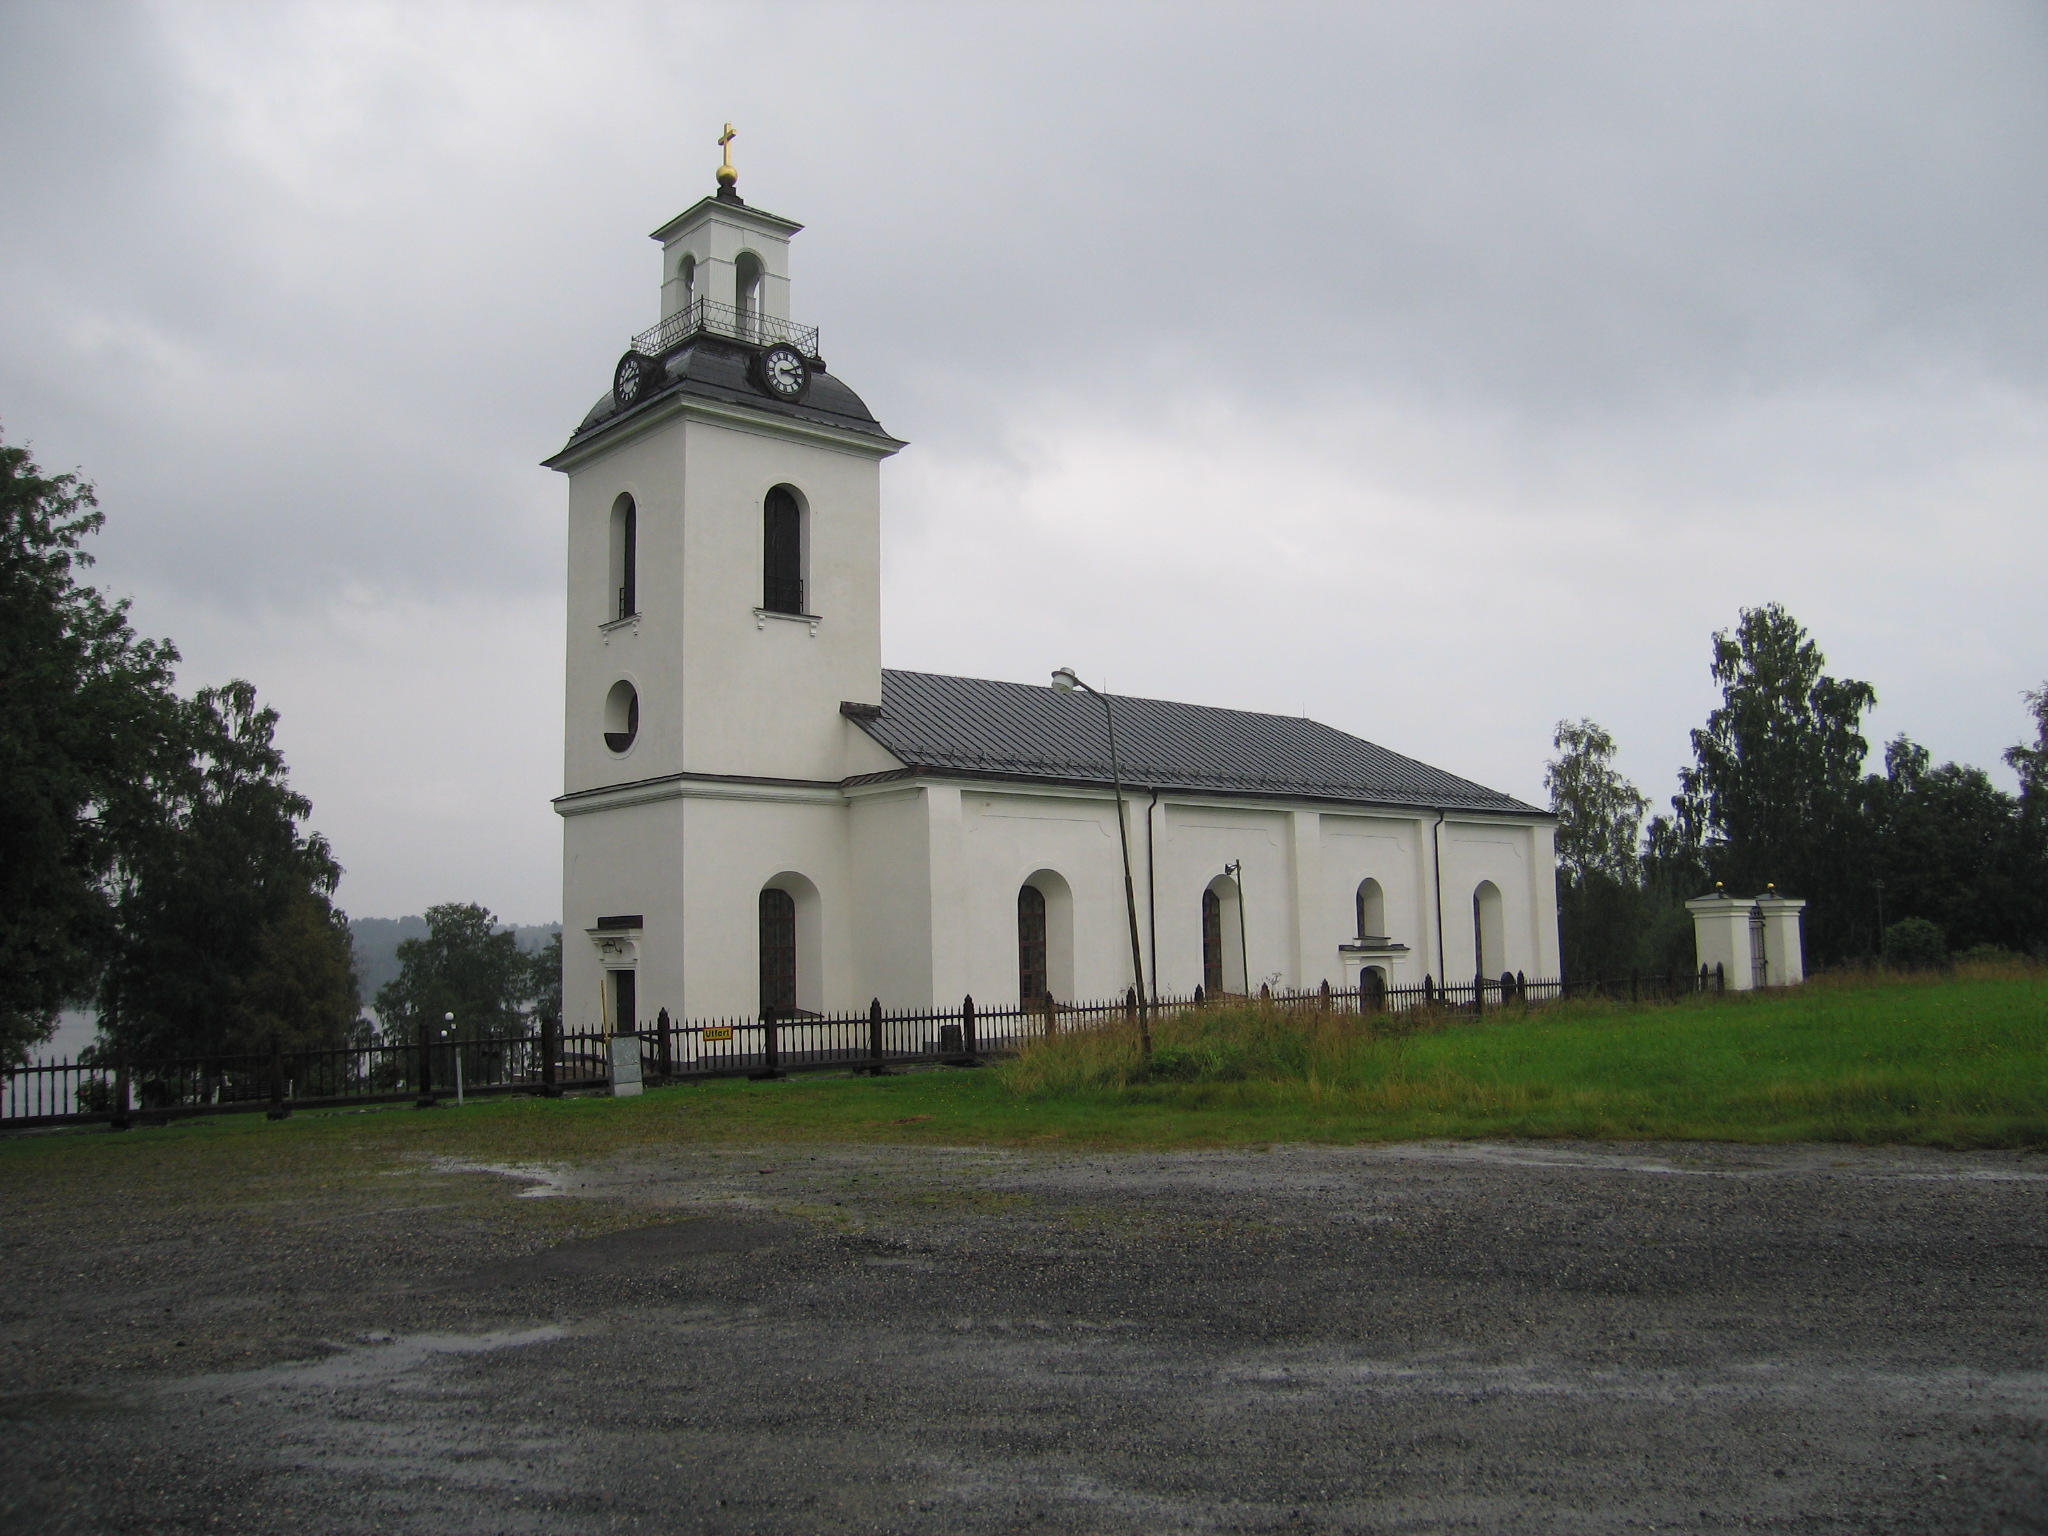 Helgums kyrka med omgivande kyrkogård. Vy från sydväst. 